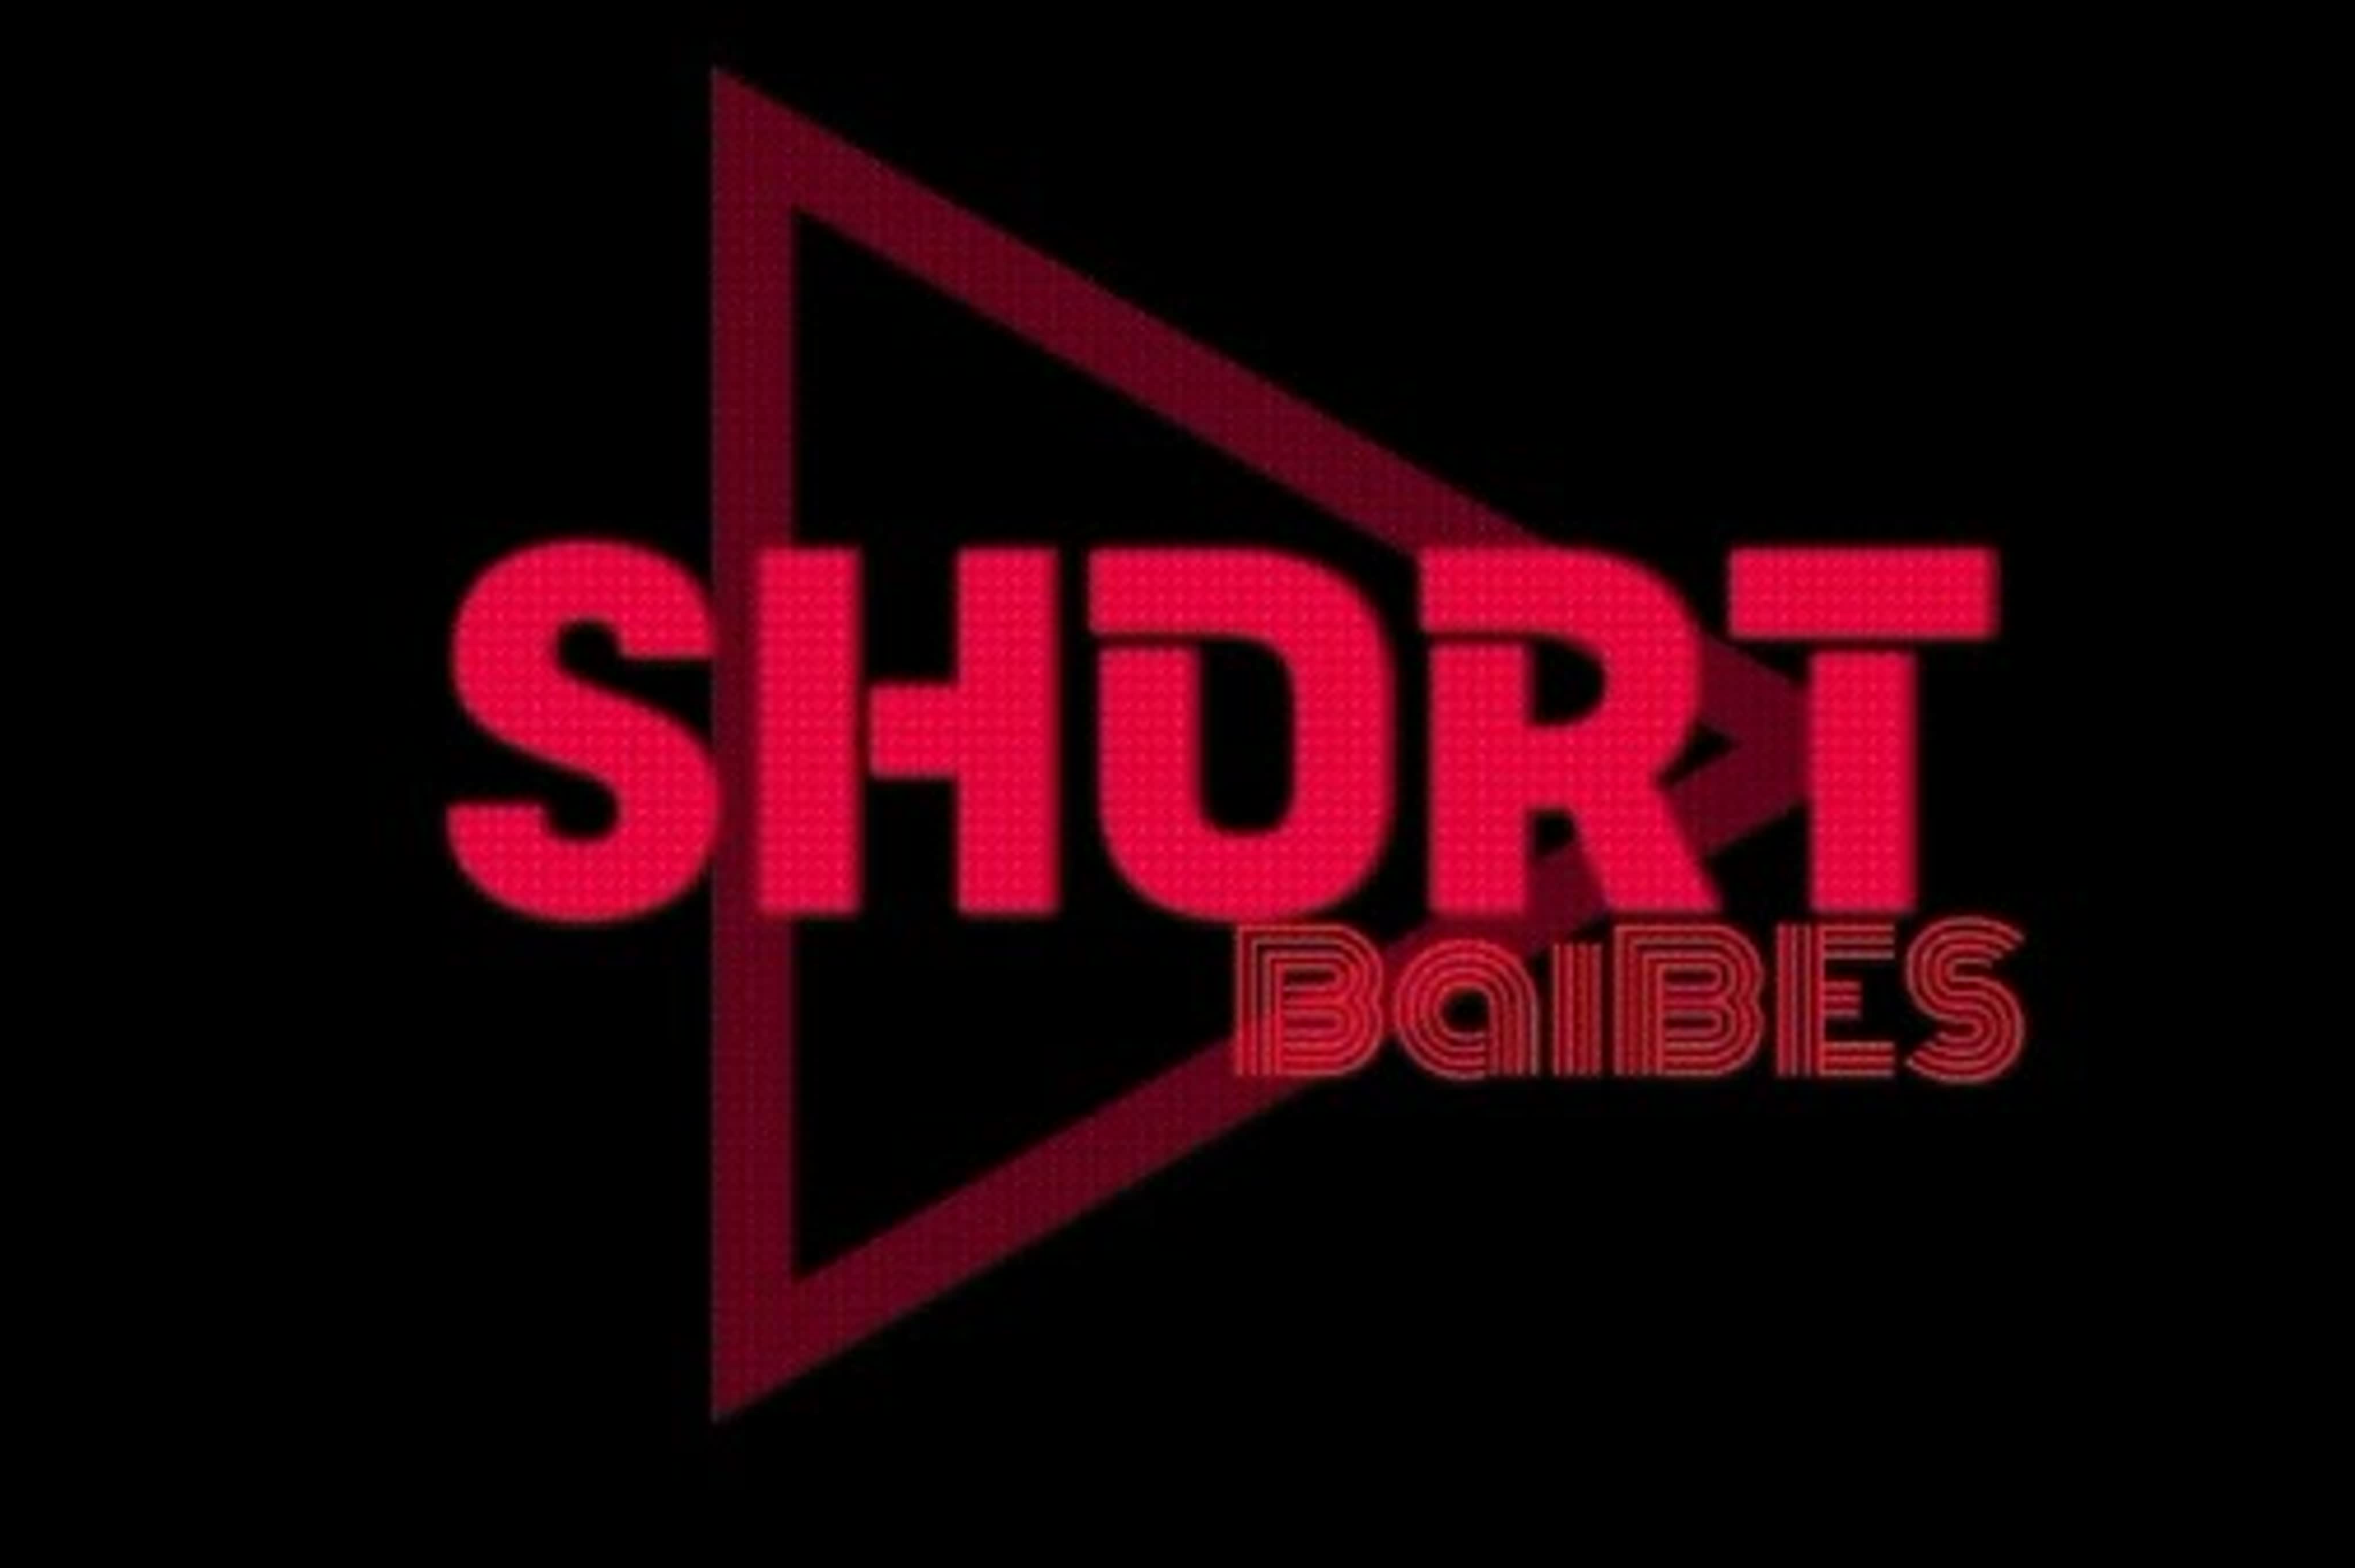 BaiBES -SHORT